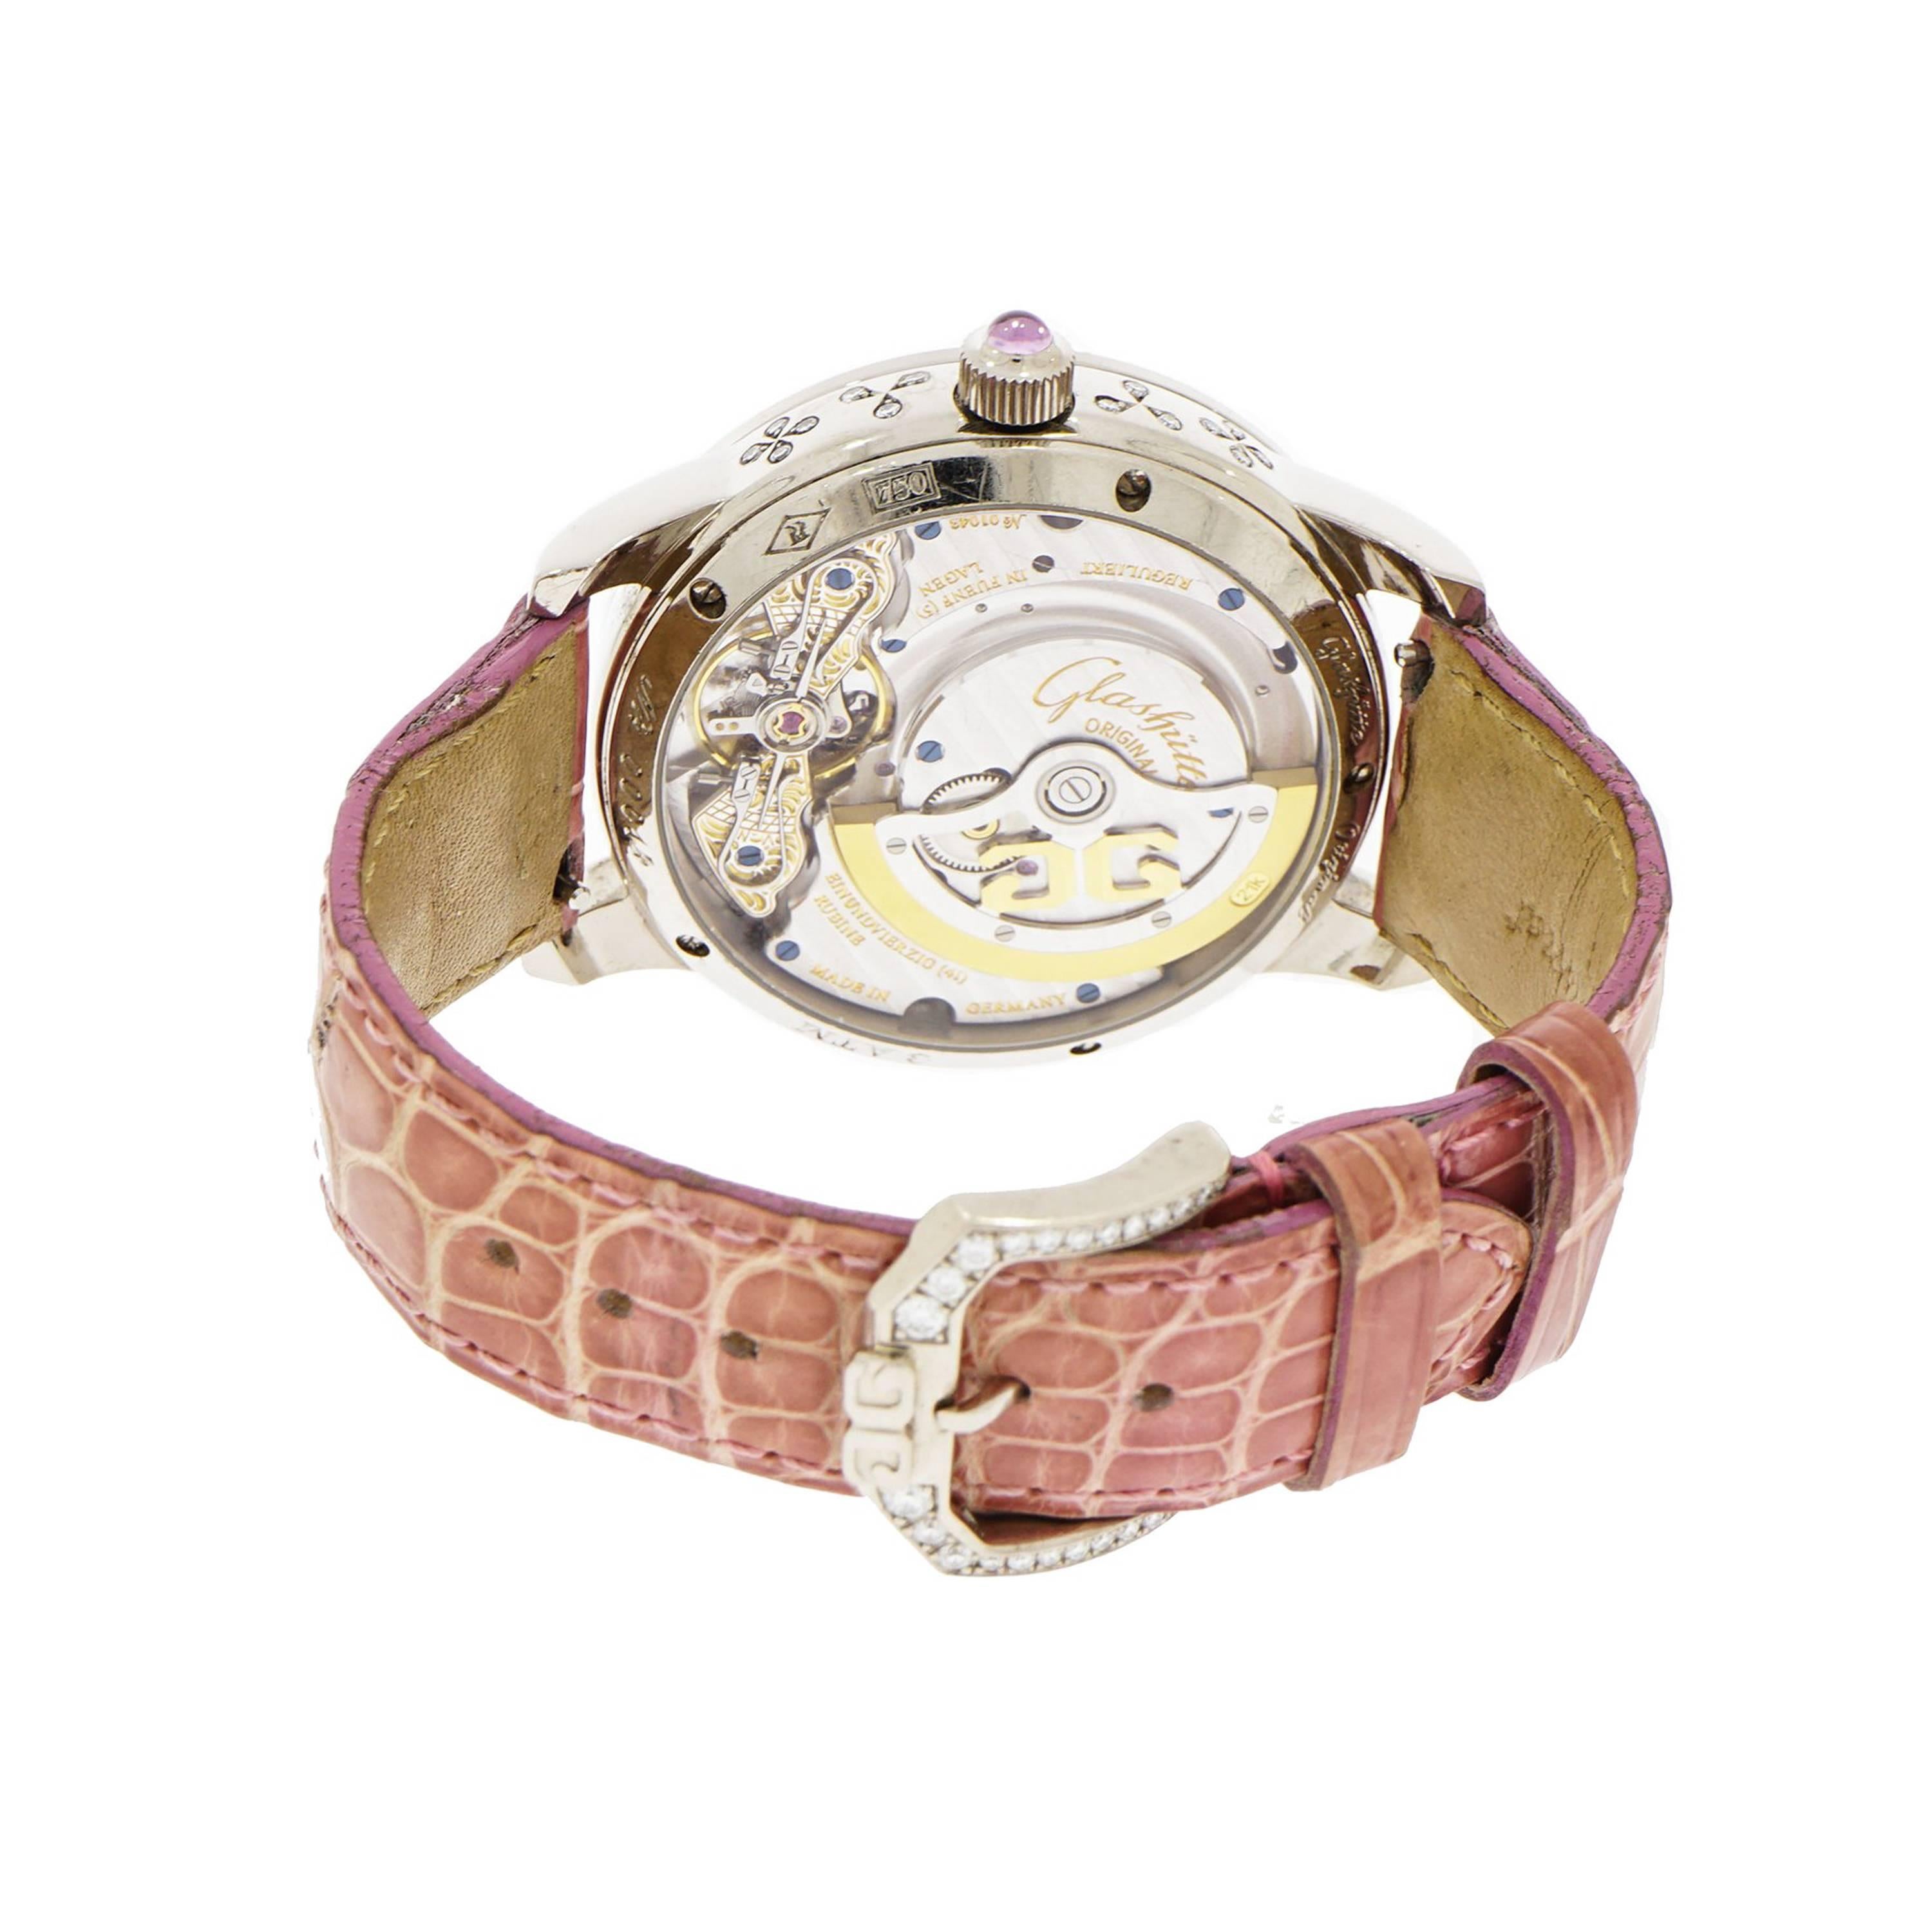 glashutte original ladies wristwatches